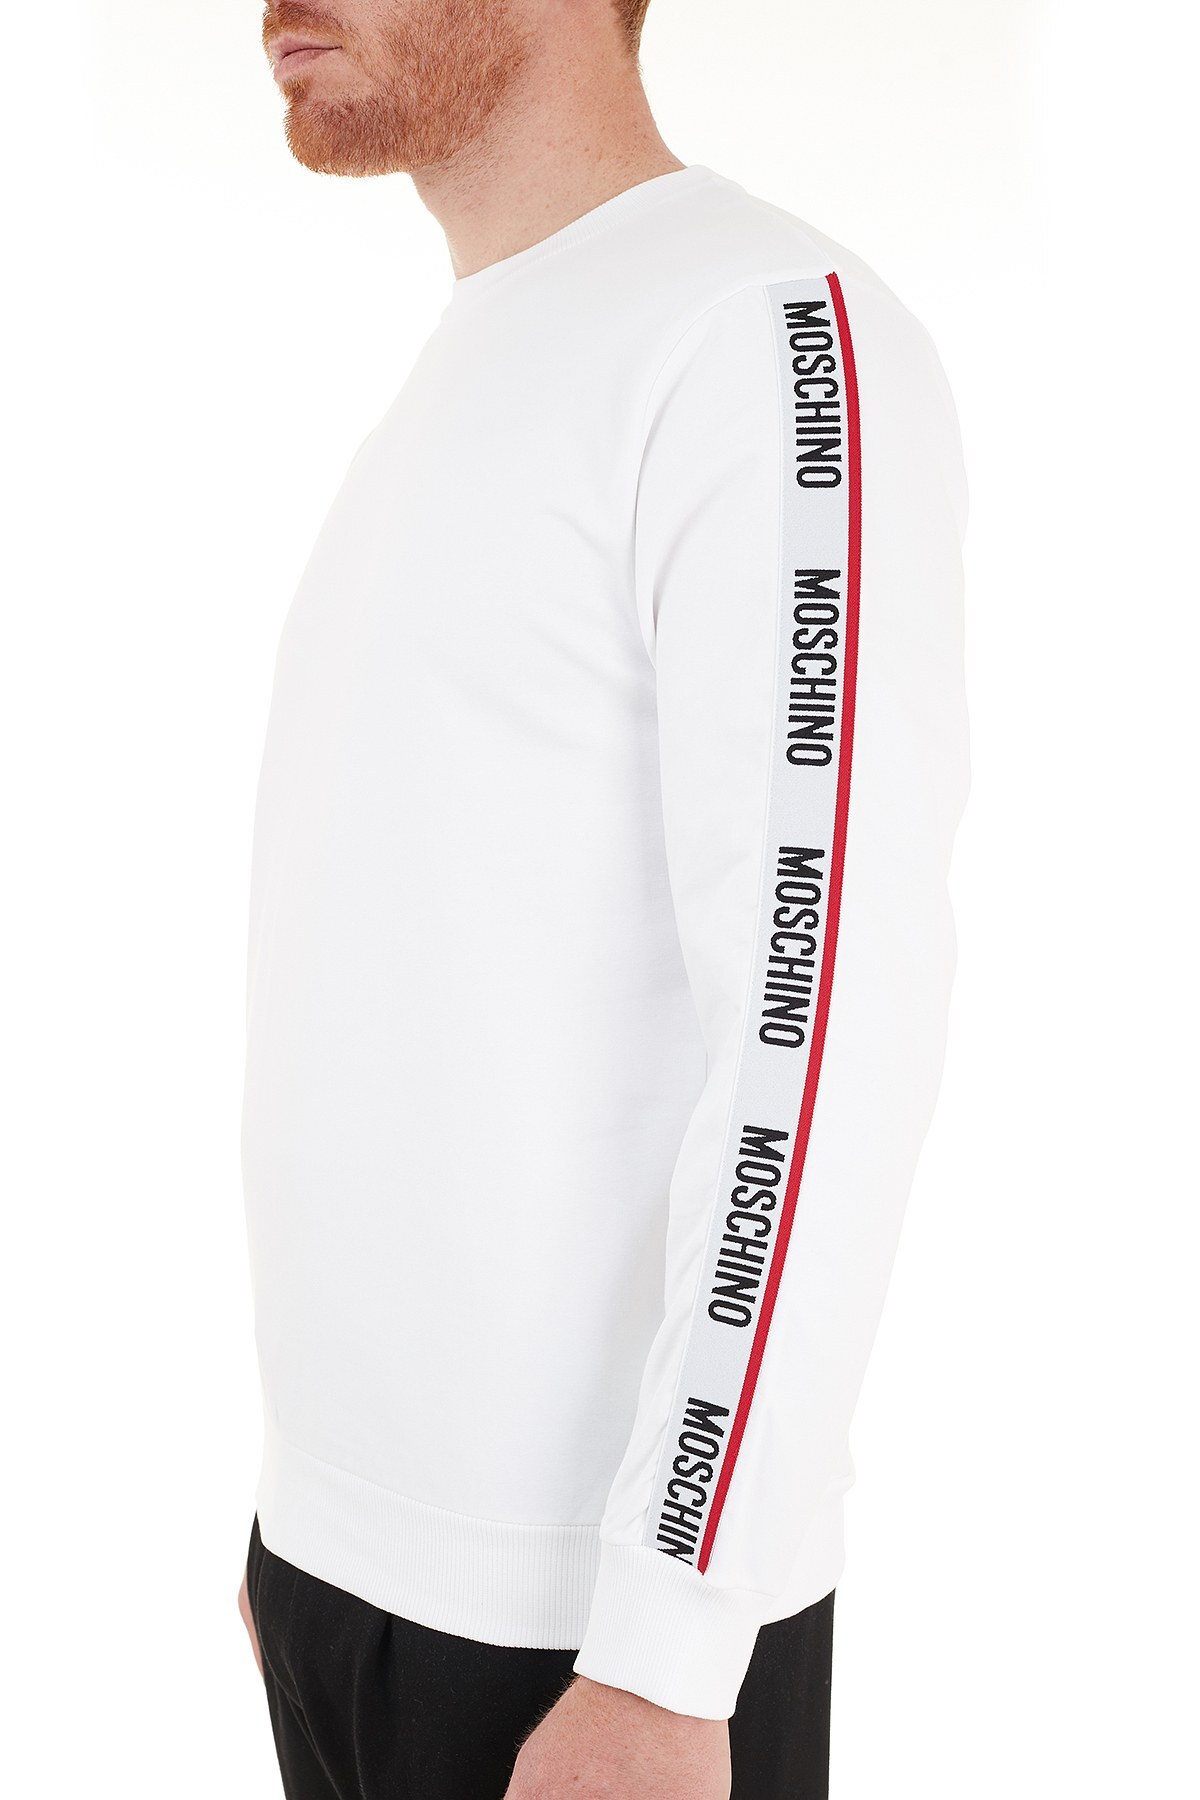 Moschino Regular Fit Logo Bantlı Bisiklet Yaka Pamuklu Erkek Sweat A1706 8106 0001 BEYAZ